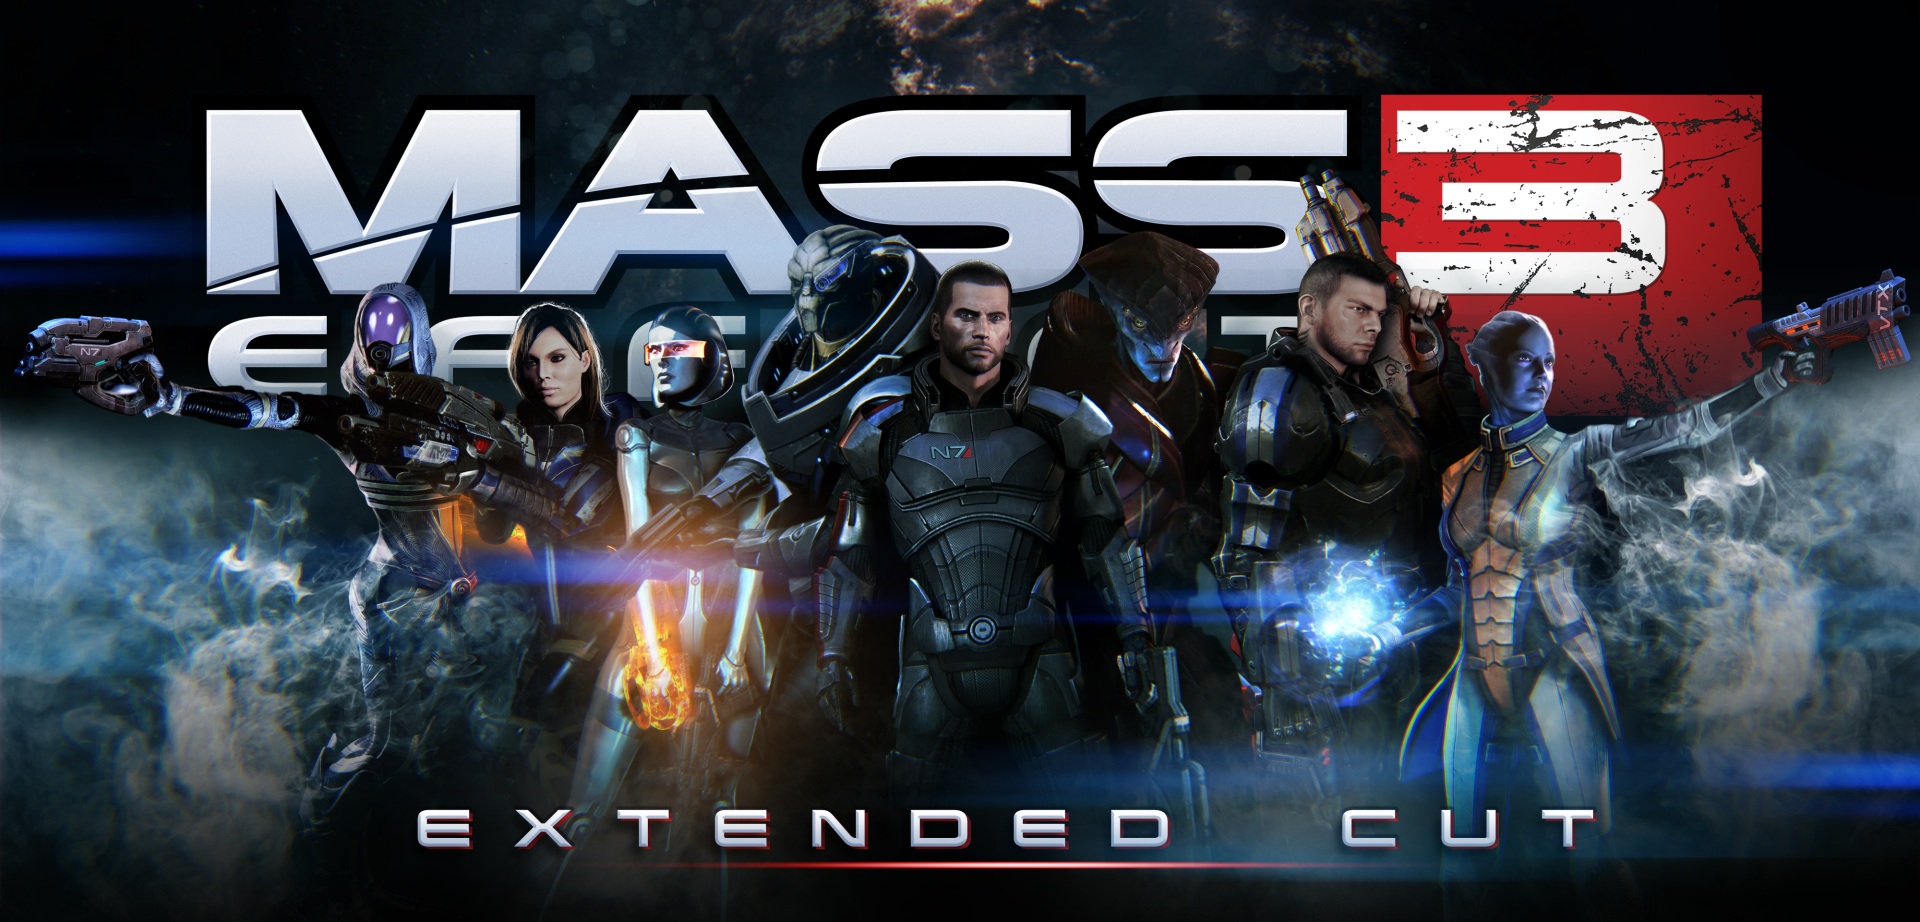 Immagine pubblicata in relazione al seguente contenuto: BioWare estende i finali di Mass Effect 3 con il DLC Extended Cut | Nome immagine: news17513_1.jpg